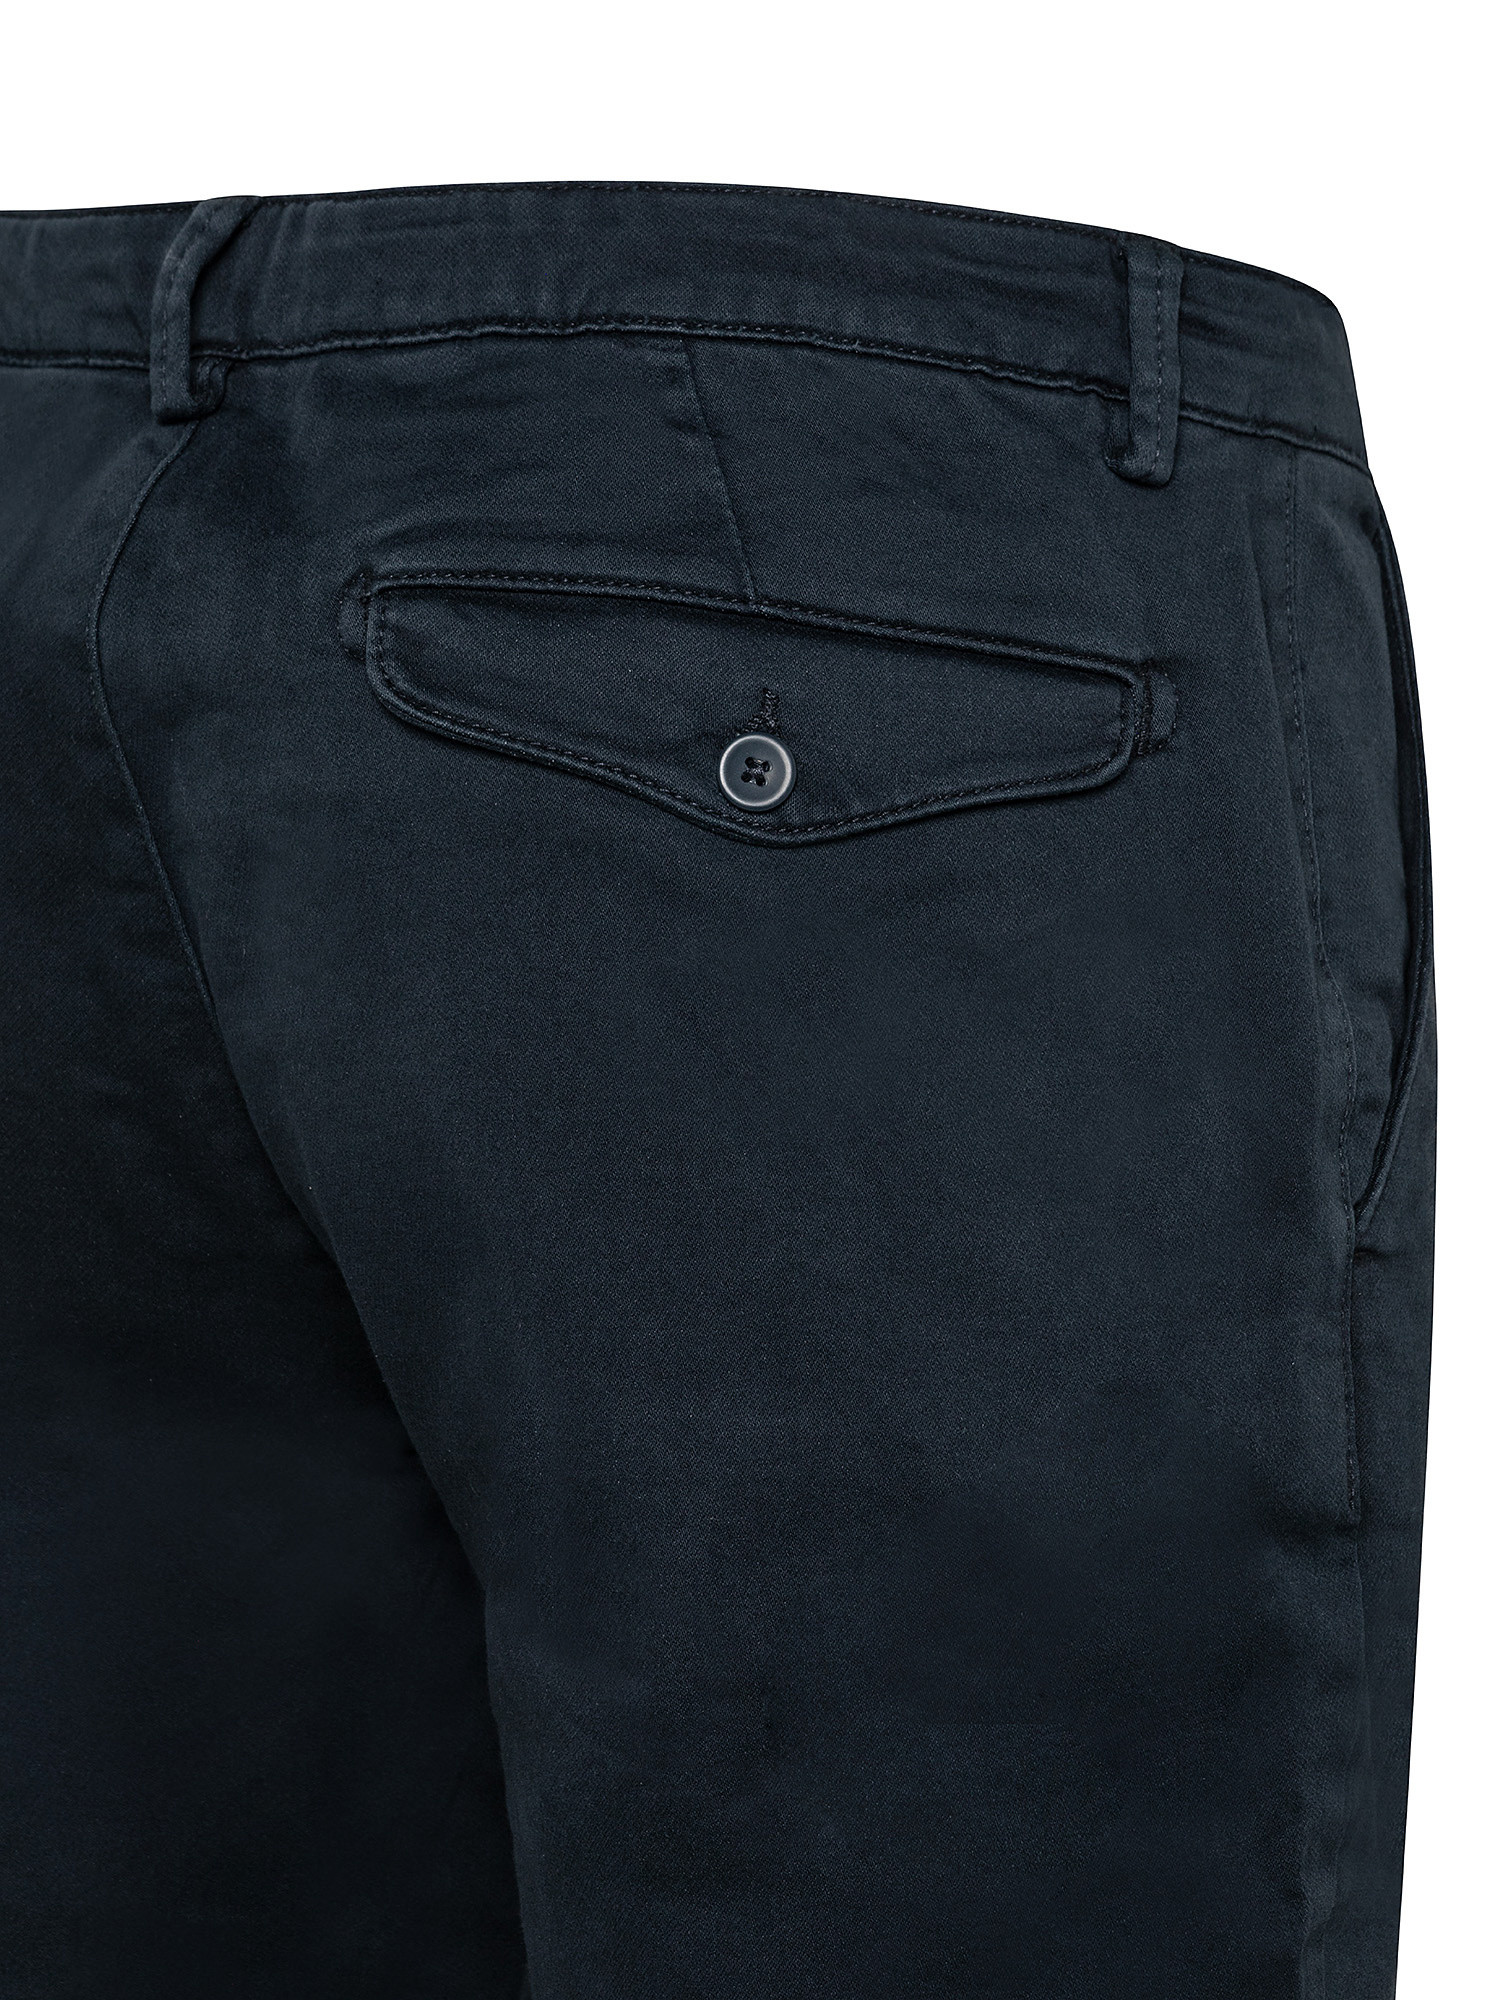 Pantalone chinos regular in felpa, Blu, large image number 2